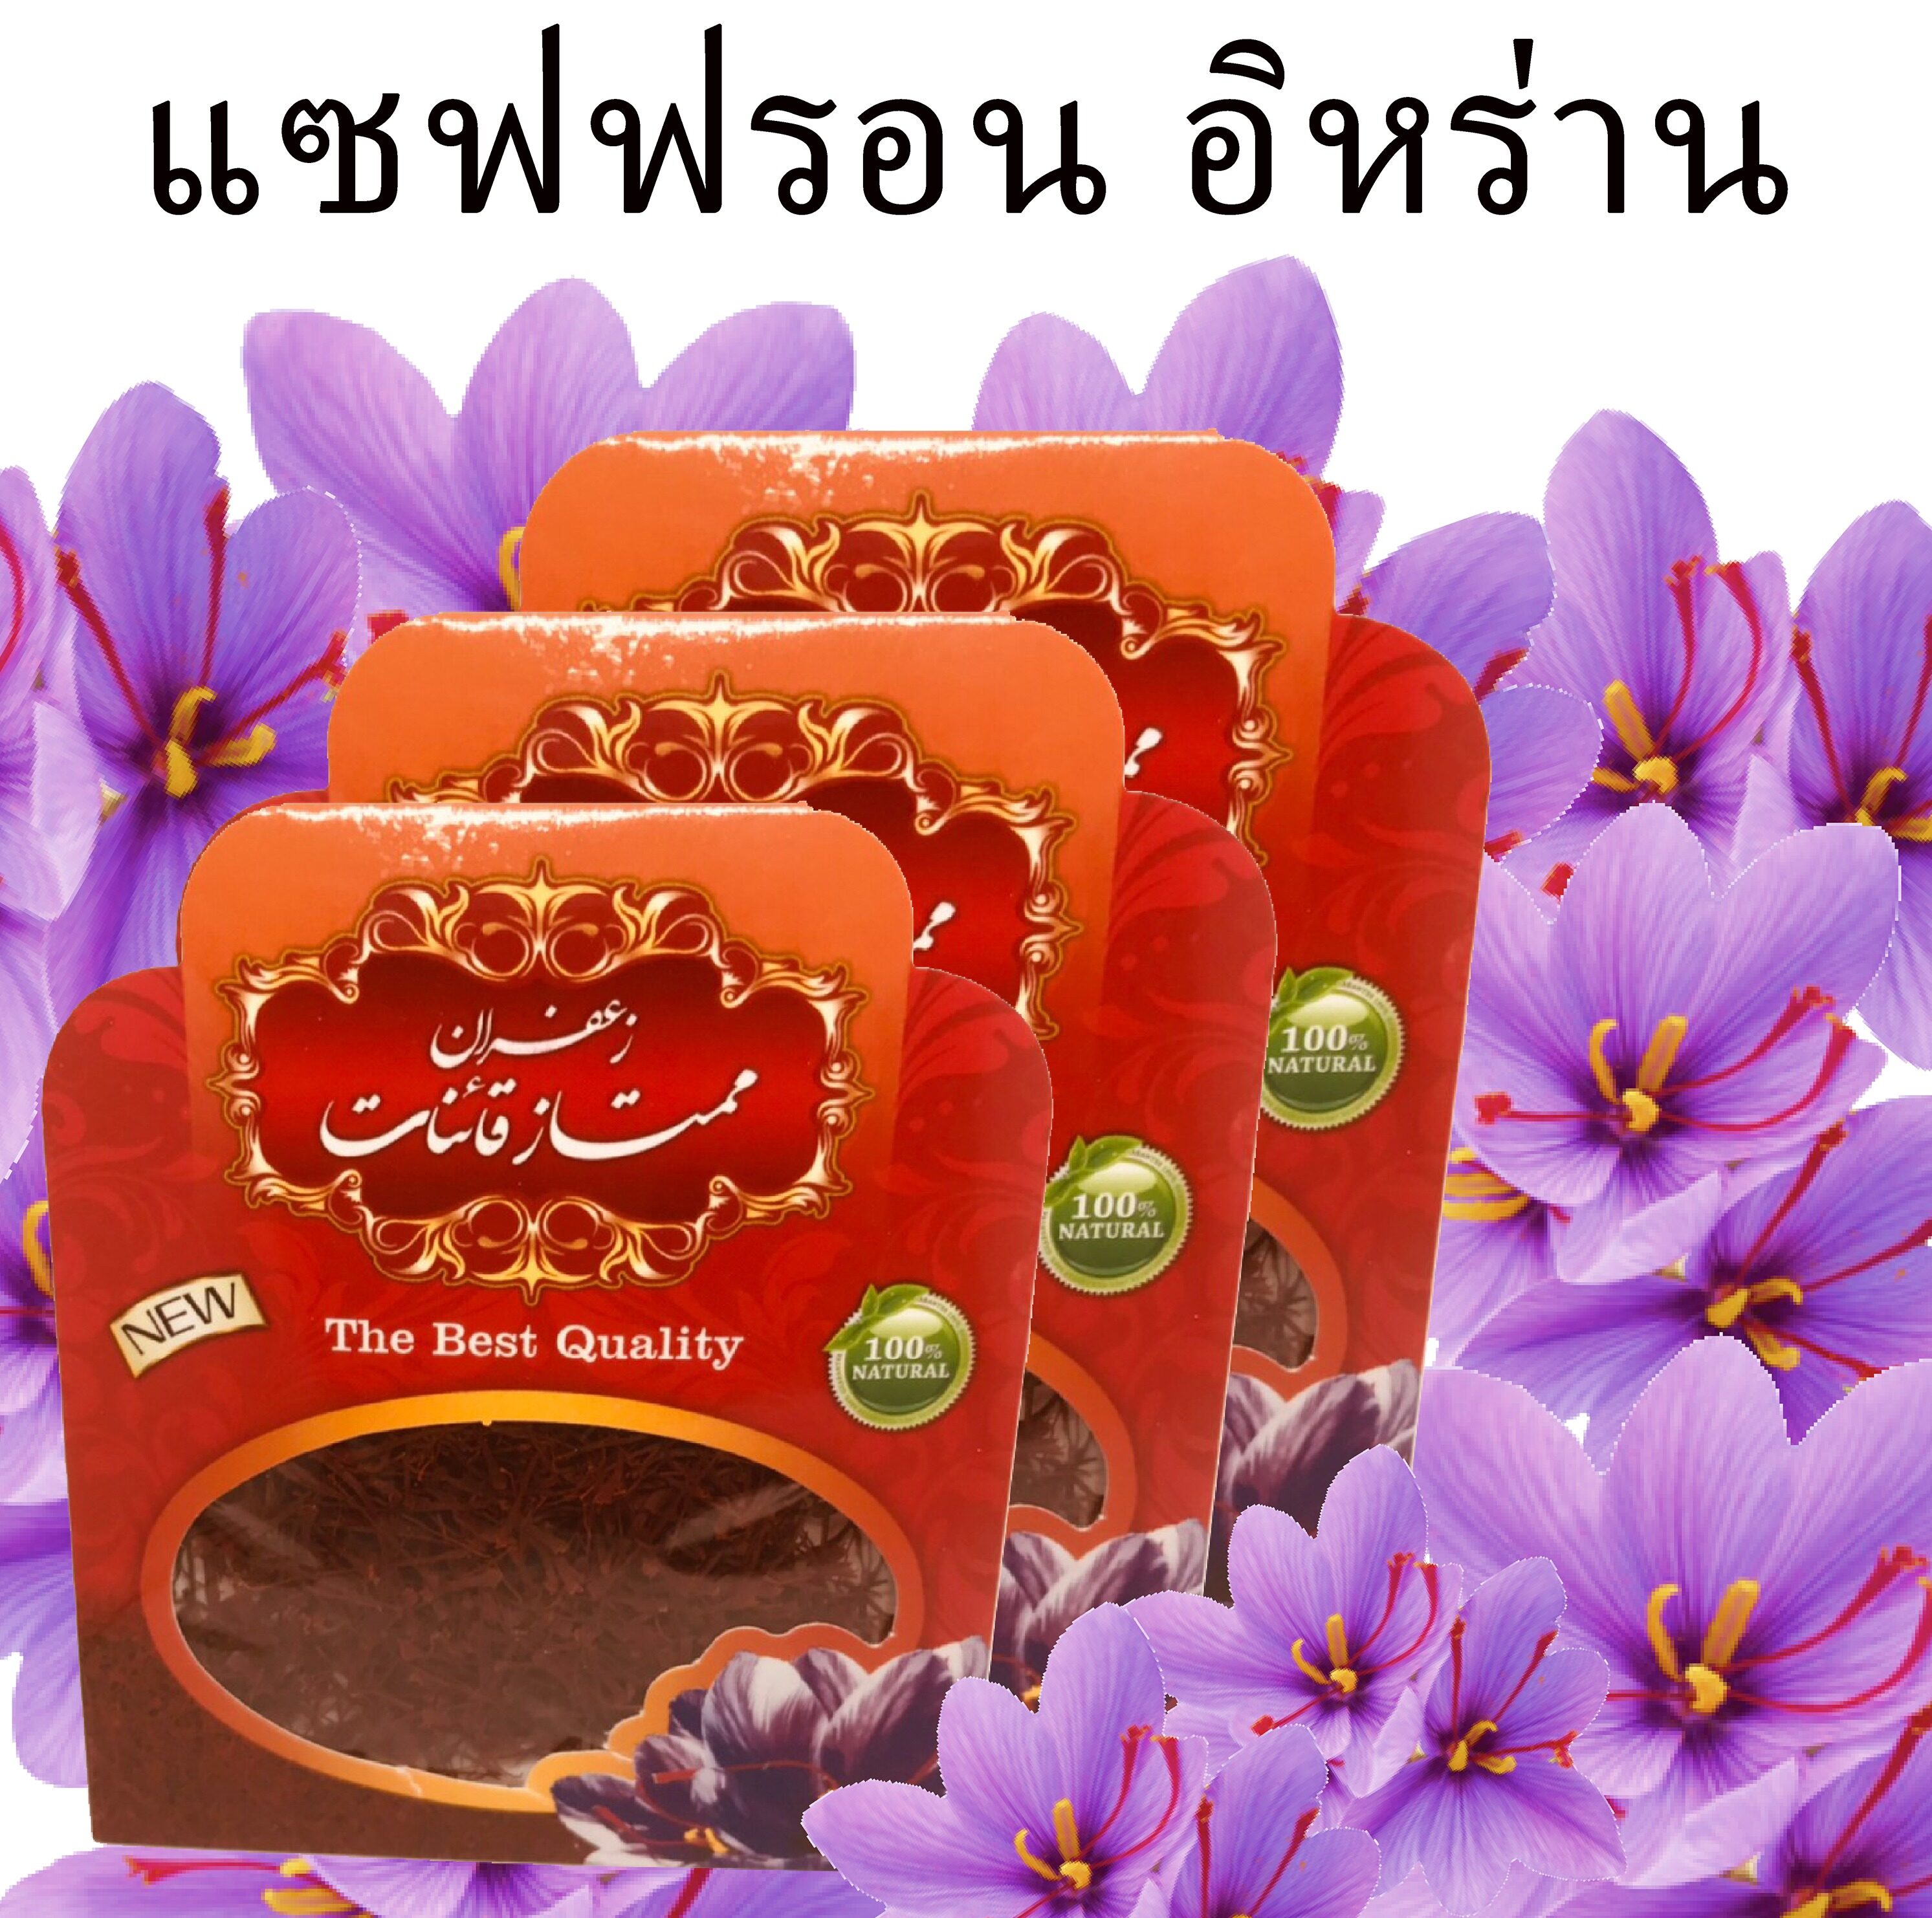 Premium Saffron 1g หญ้าฝรั่น (แซฟฟรอน) ของแท้ 100% คุณภาพสูง 1 กรัม gram ชา tea